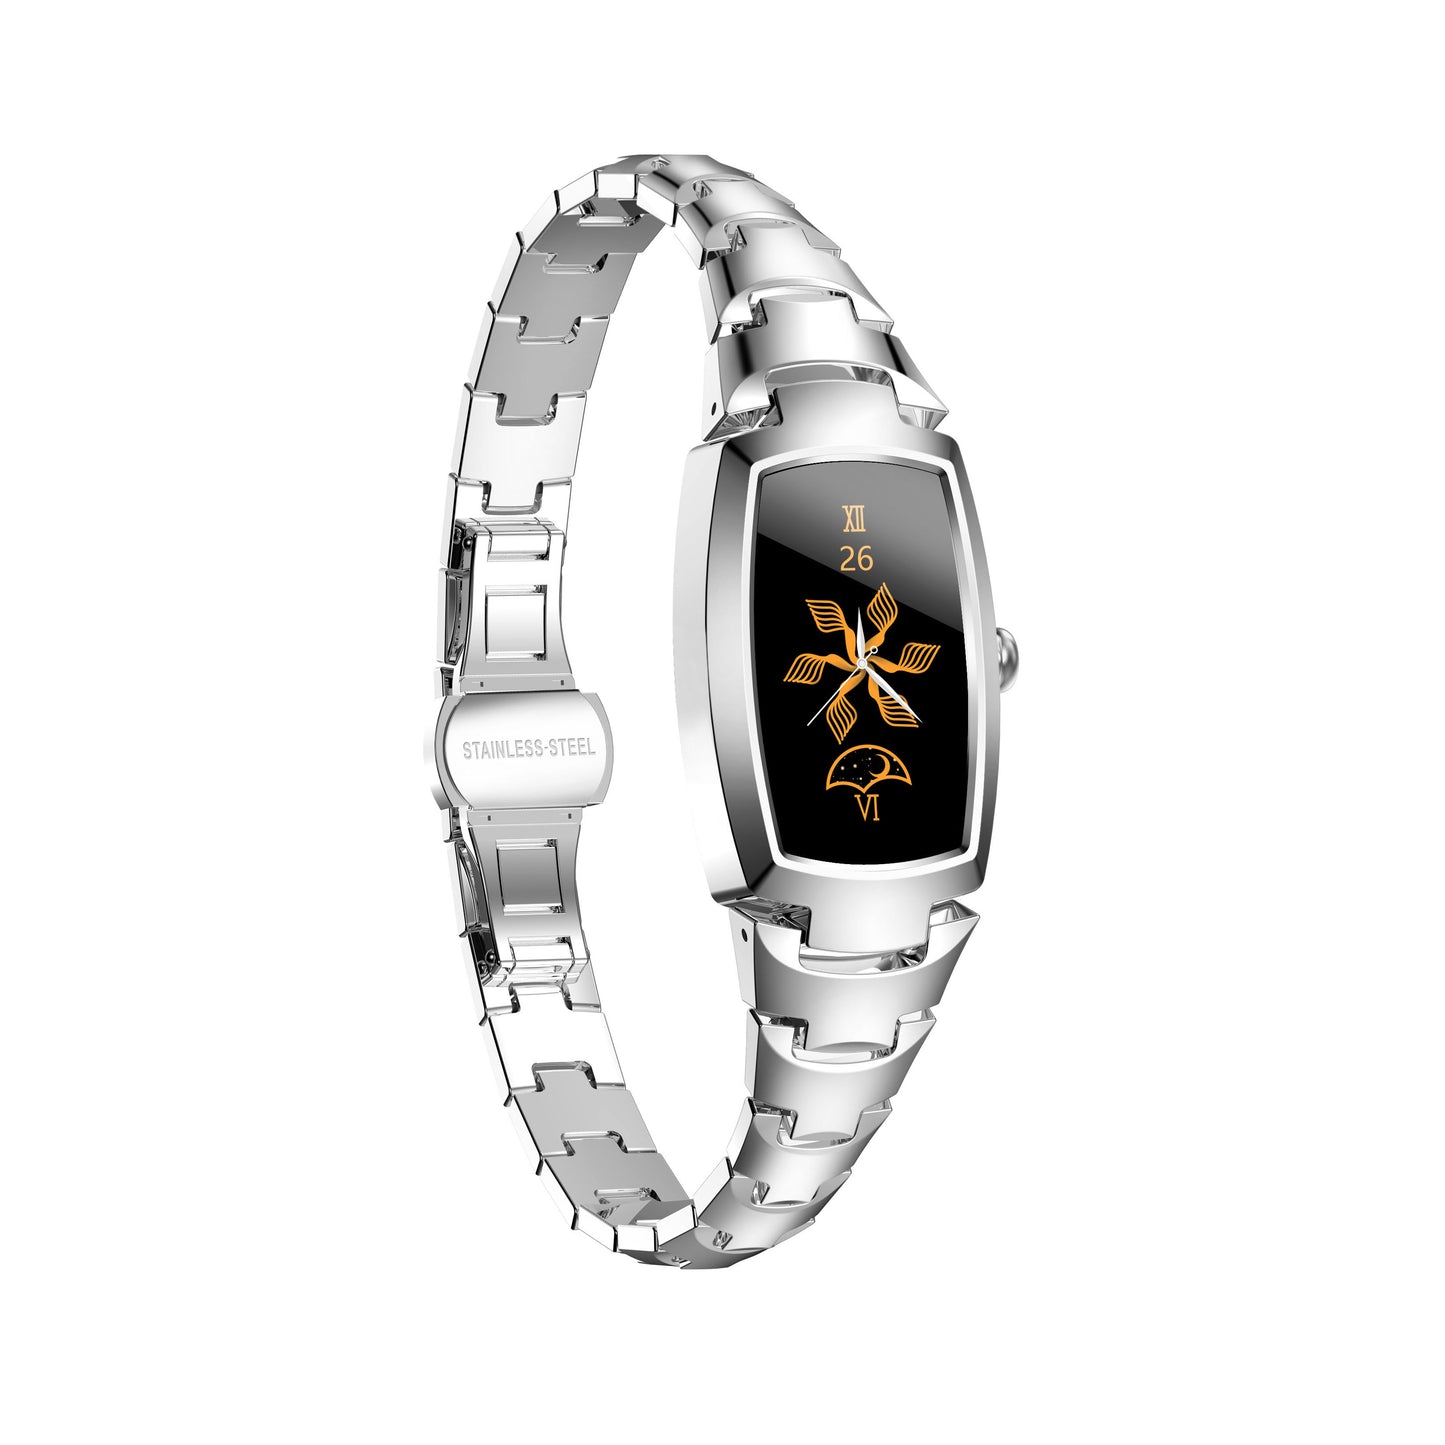 Elegance Pro Smart Watch